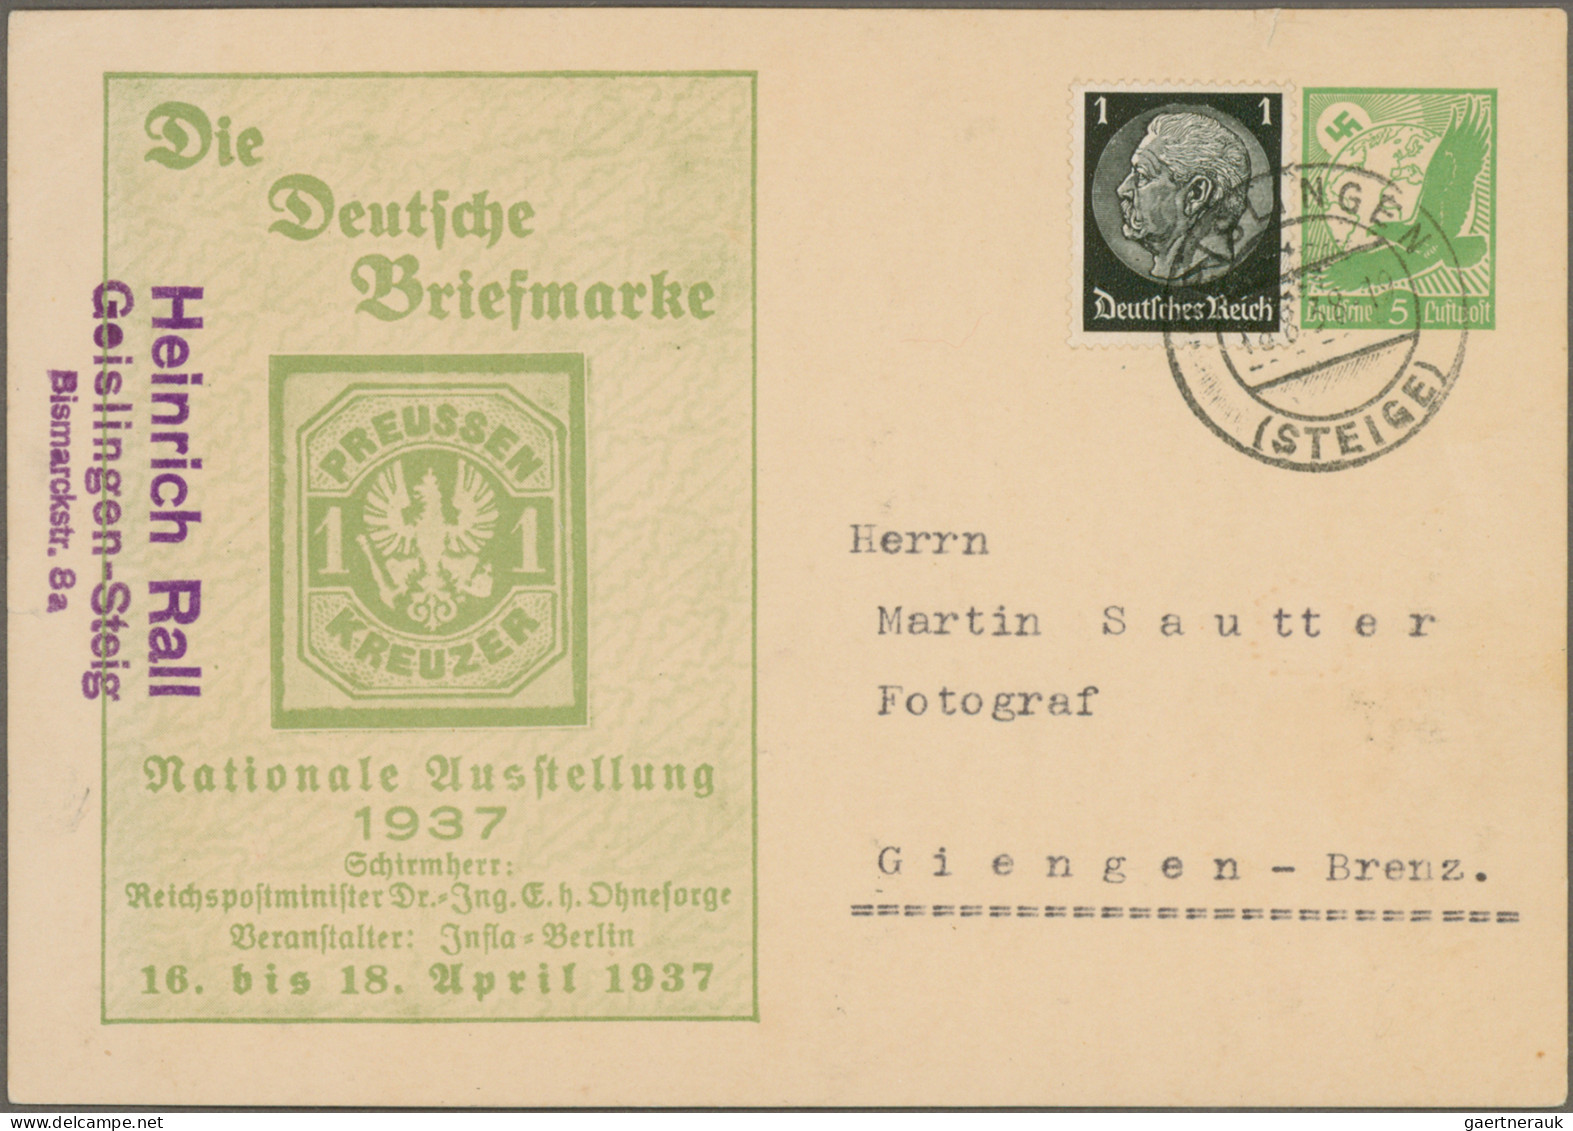 Deutsches Reich - 3. Reich: 1934/1944, vielseitige Partie von ca. 242 Briefen un